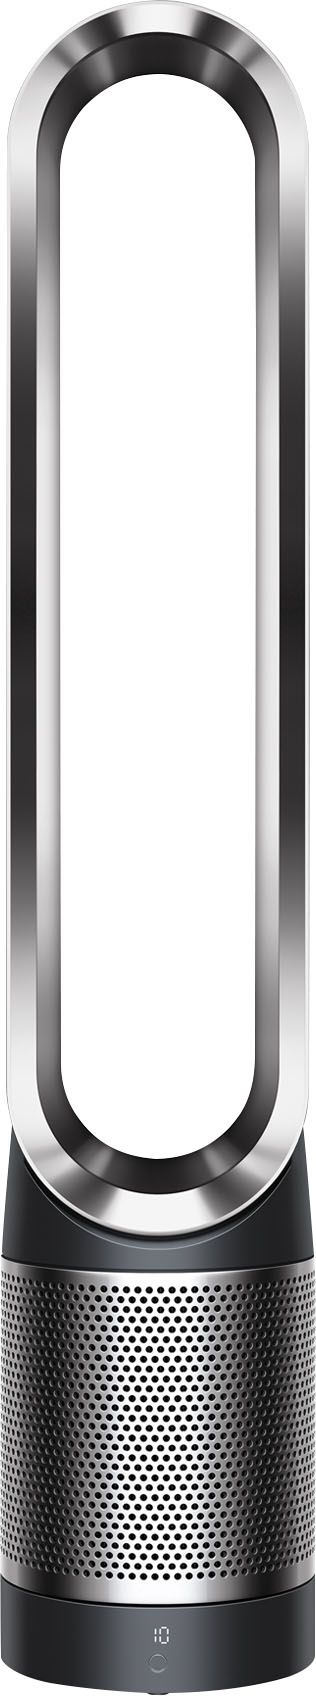 Dyson Pure Cool Purifying Fan TP01, Tower Black 349324-01 - Best Buy | Best Buy U.S.